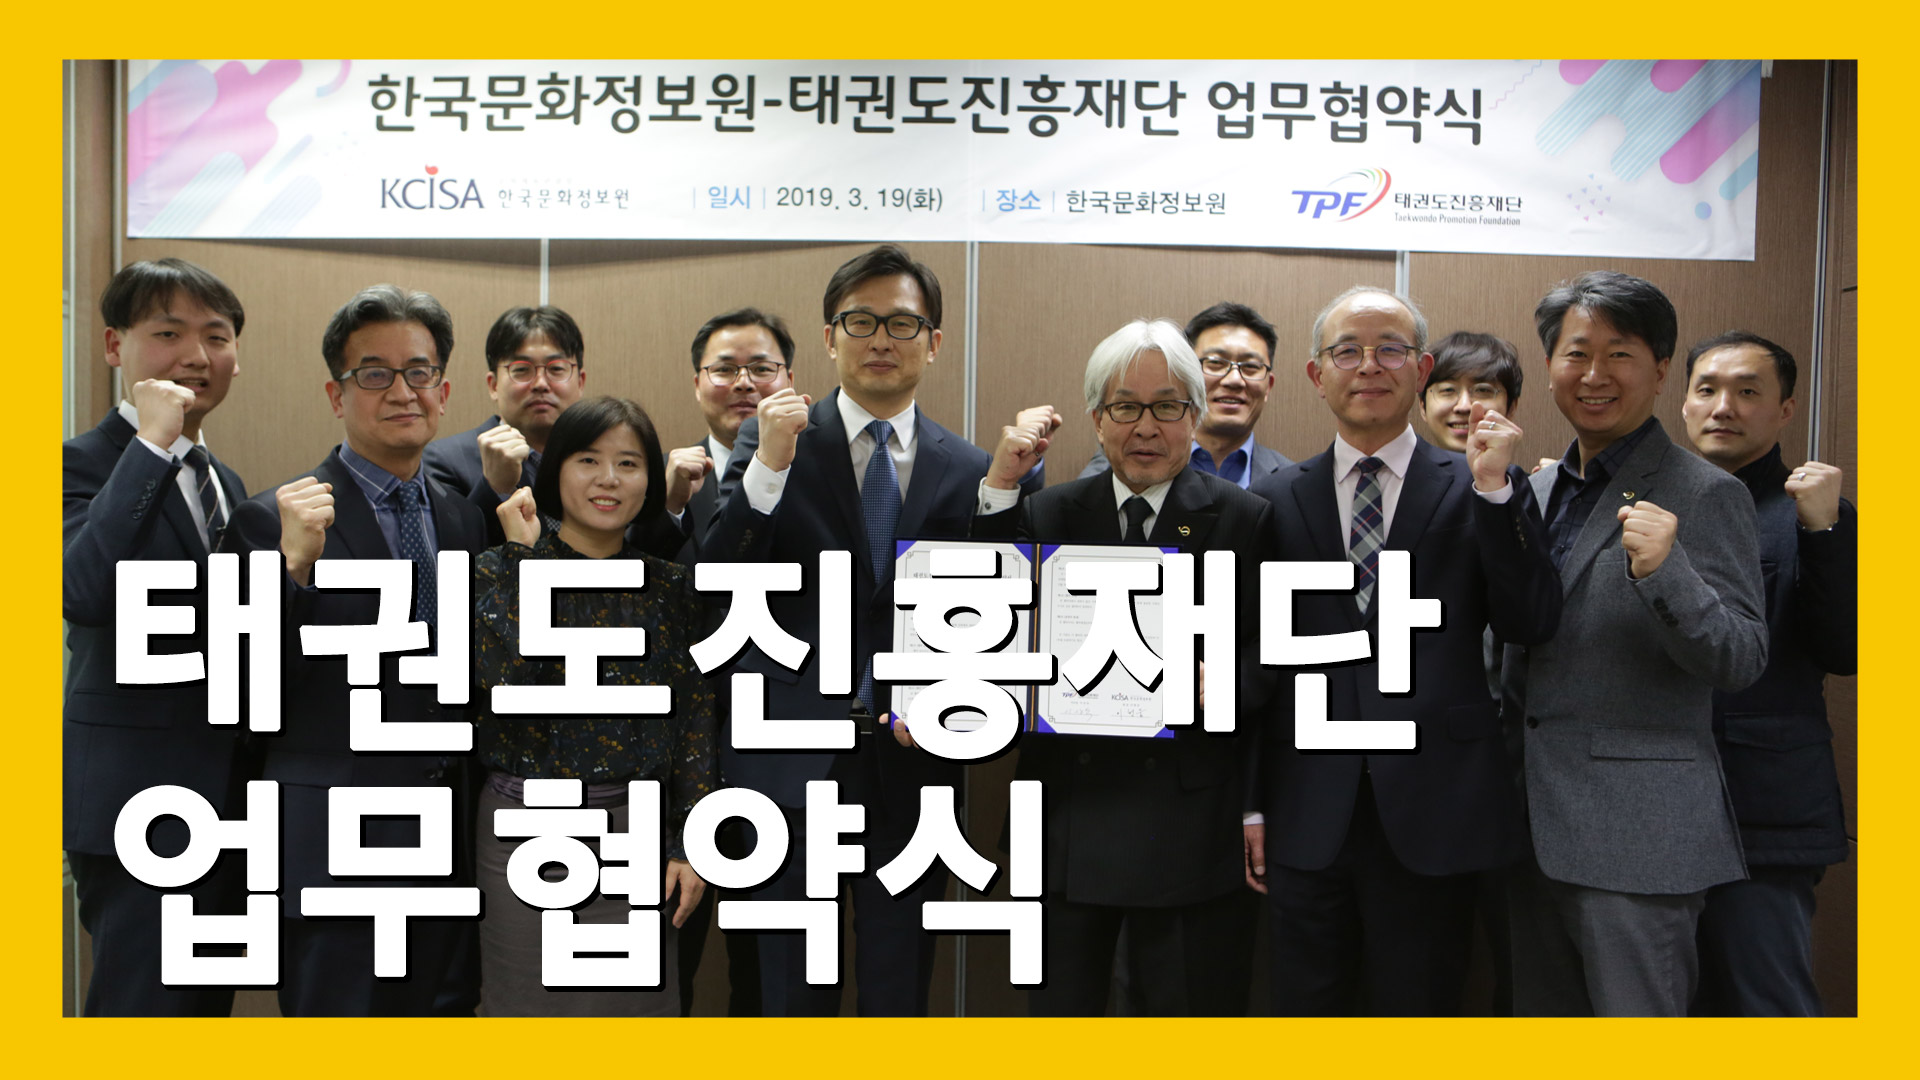 2019년 3월 19일 화요일, 한국문화정보원에서 개최된 태권도진흥재단과의 업무협약식 사진 